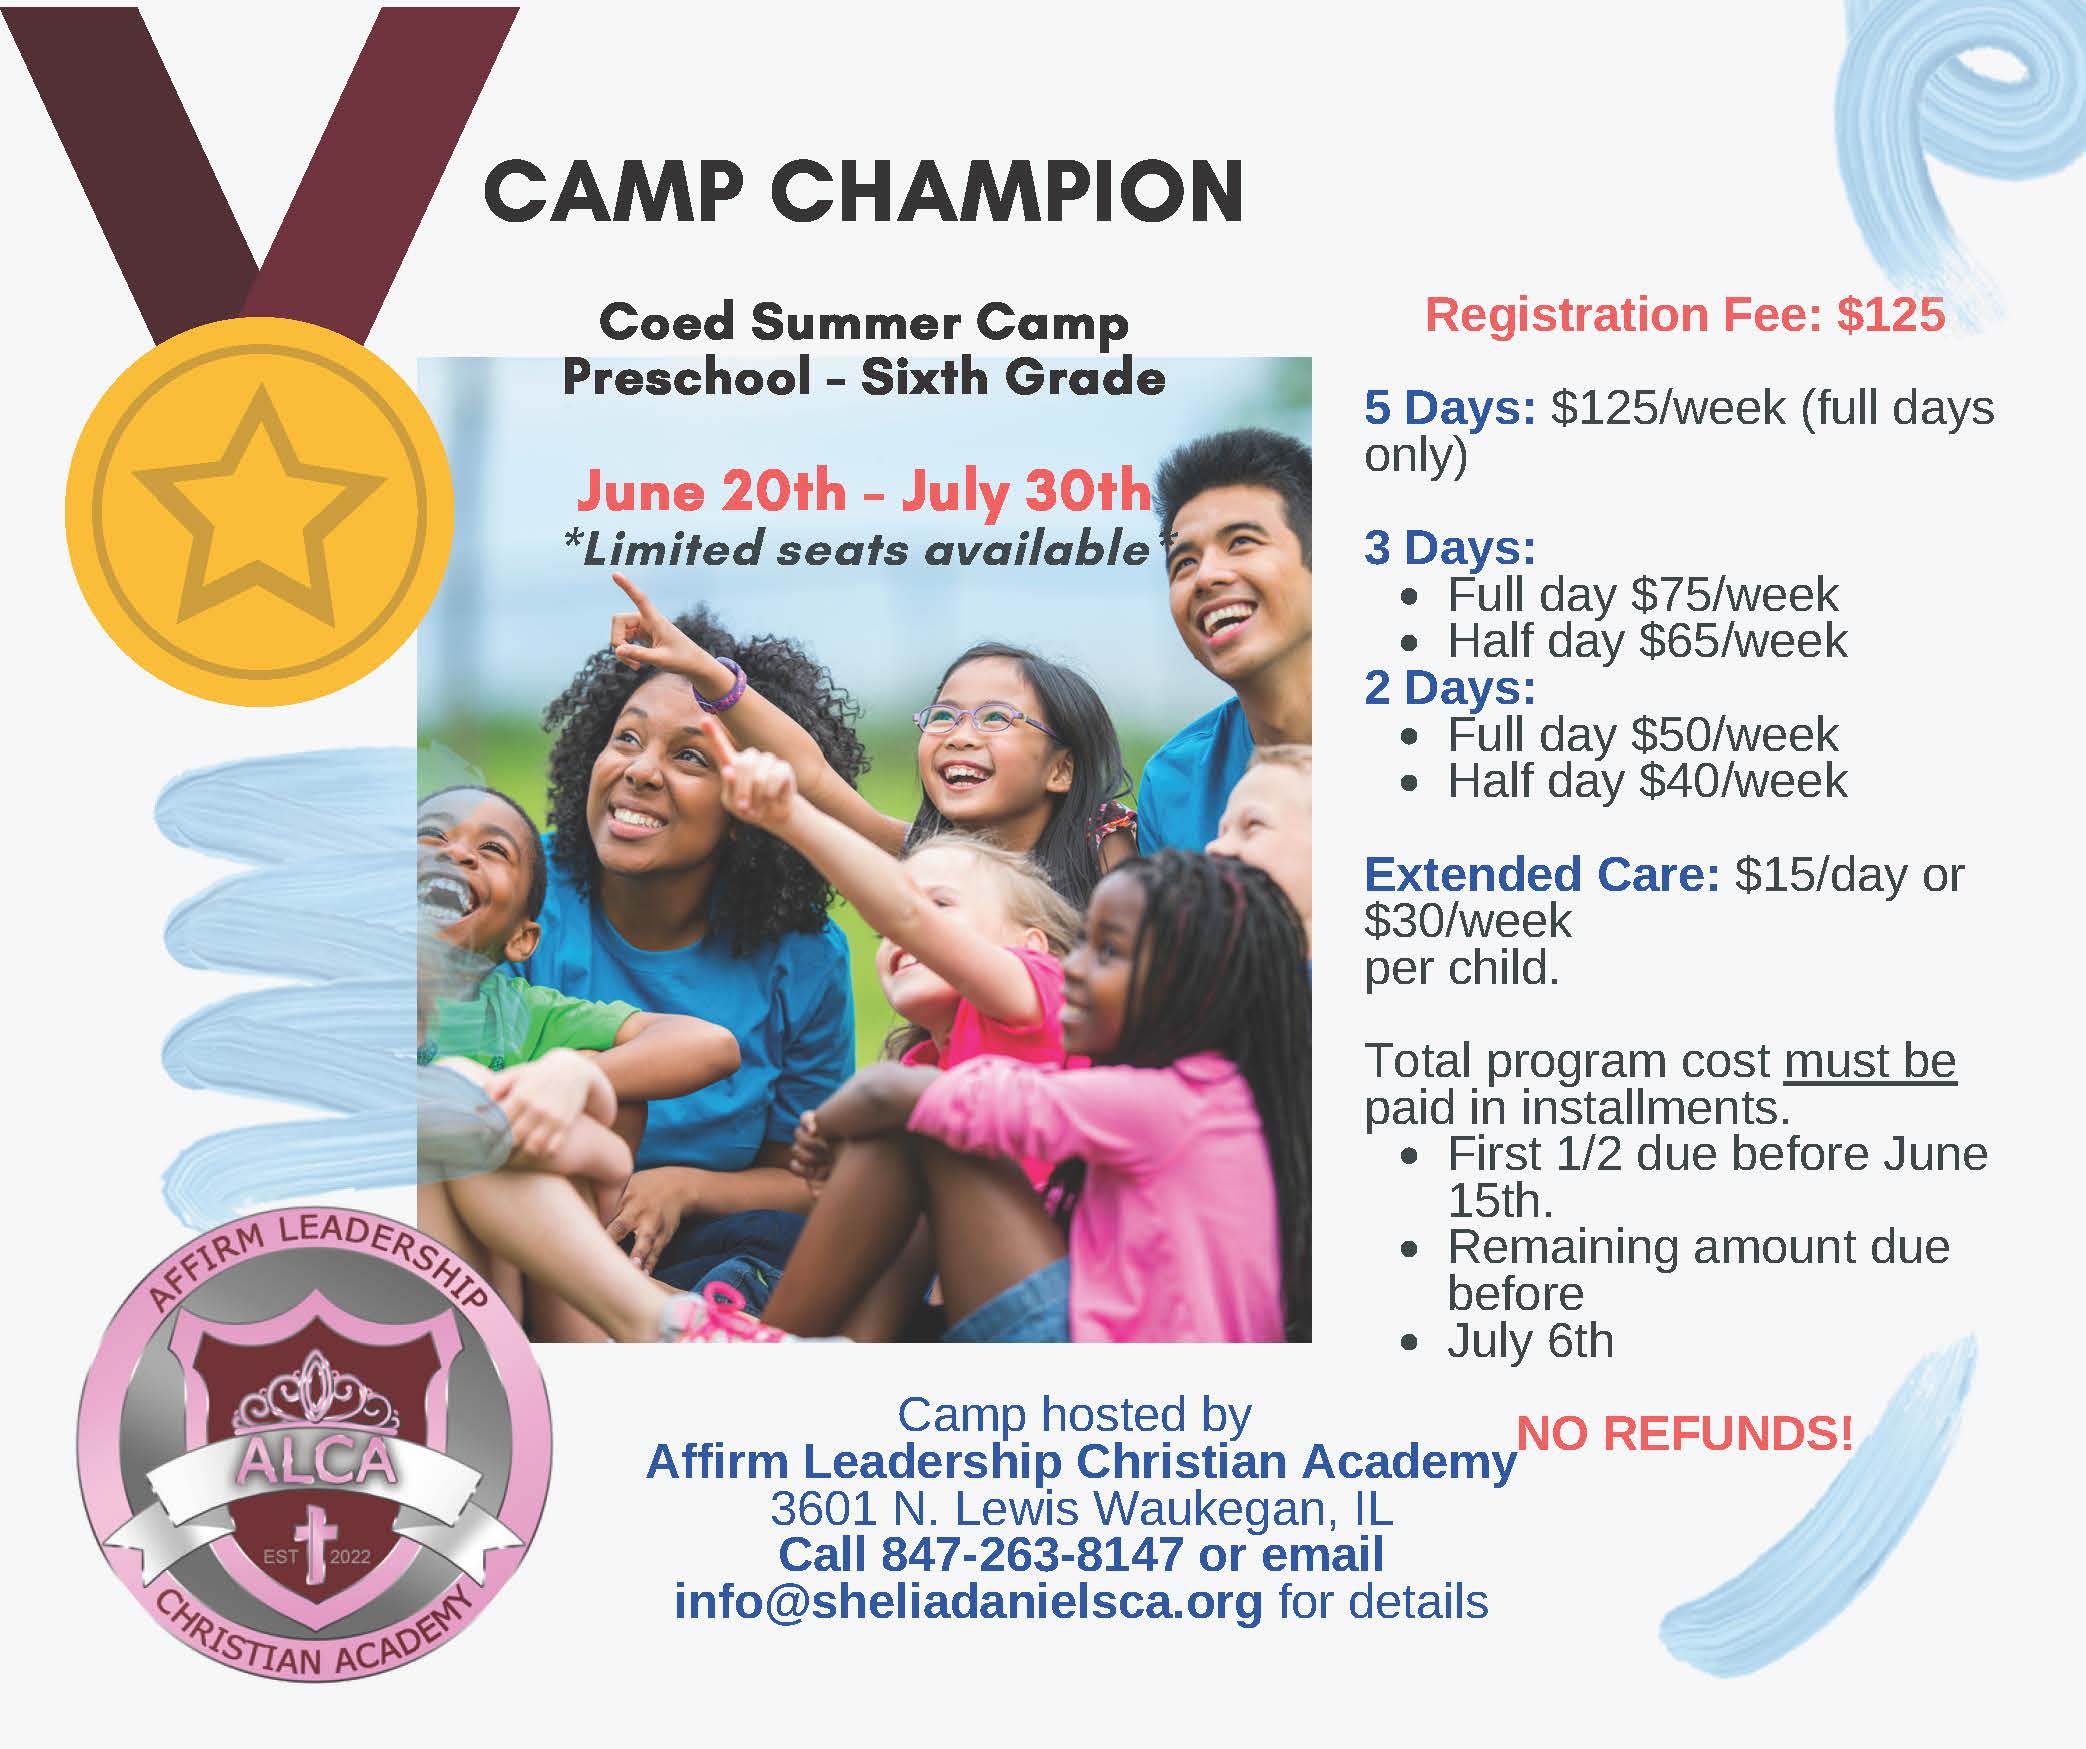 Coed Summer Camp – Preschool – Sixth Grade